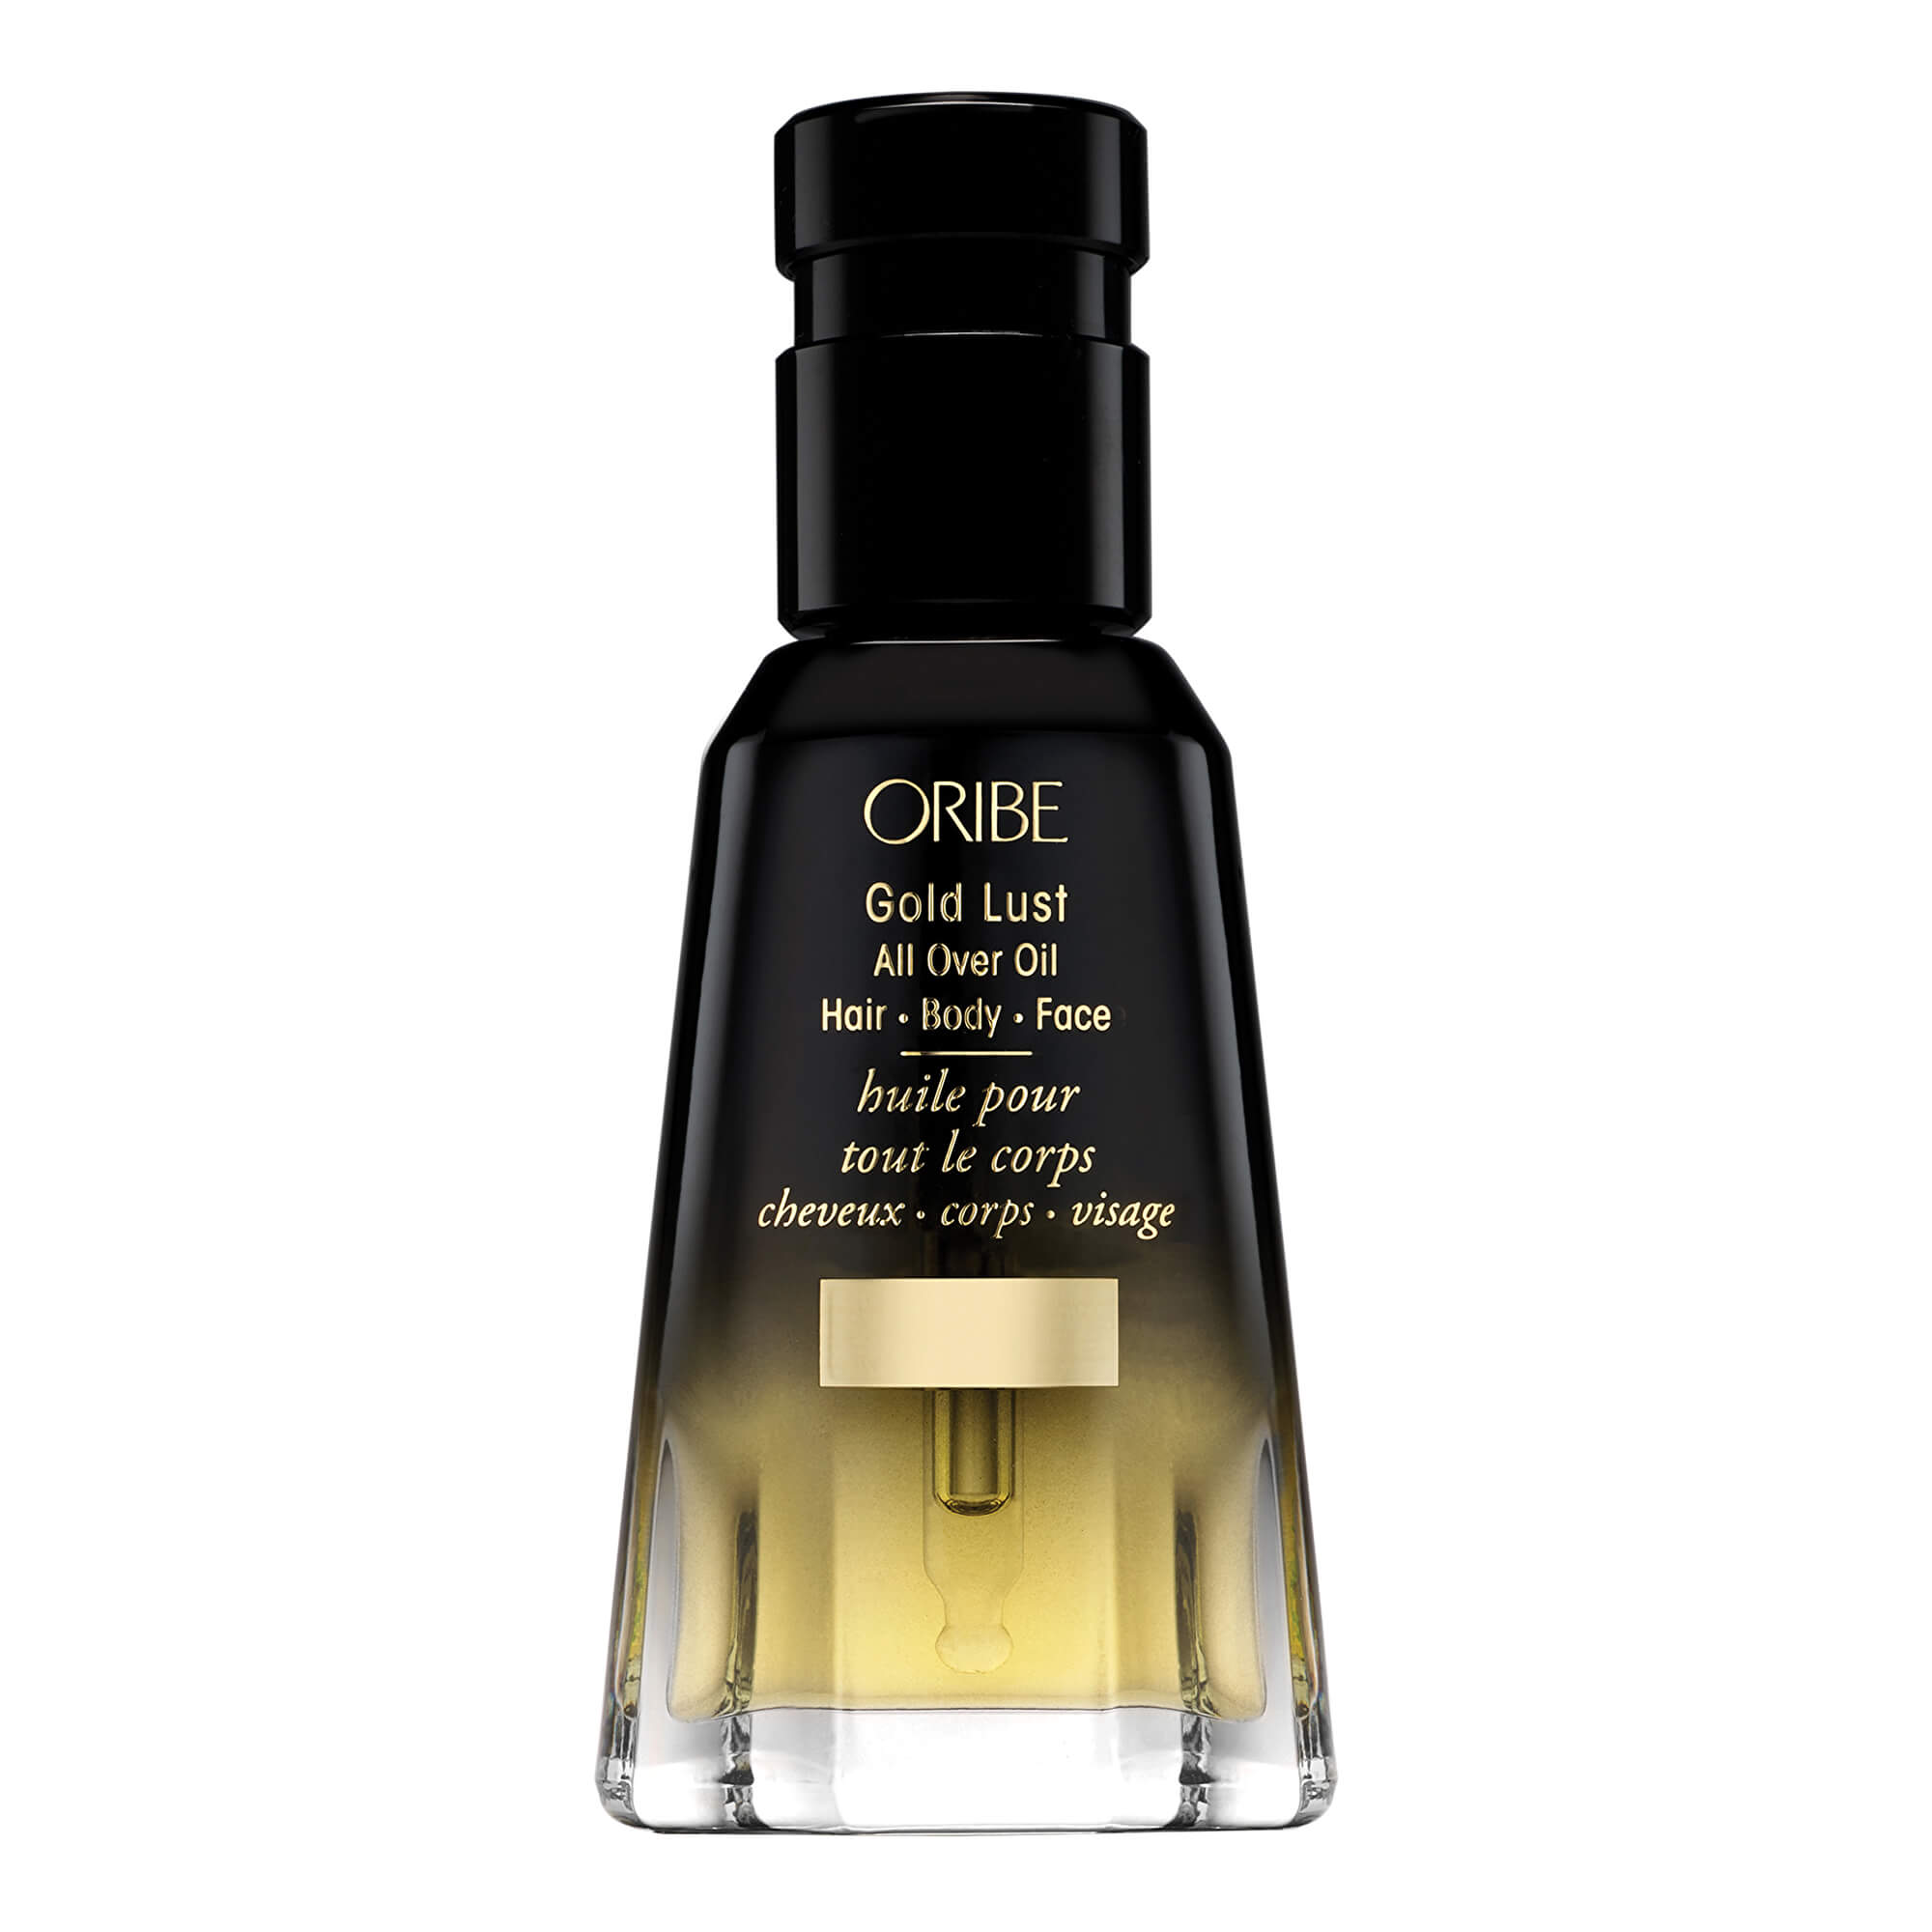 Oribe Hydratační olej na vlasy, pleť a tělo (Gold Lust All Over Oil) 50 ml